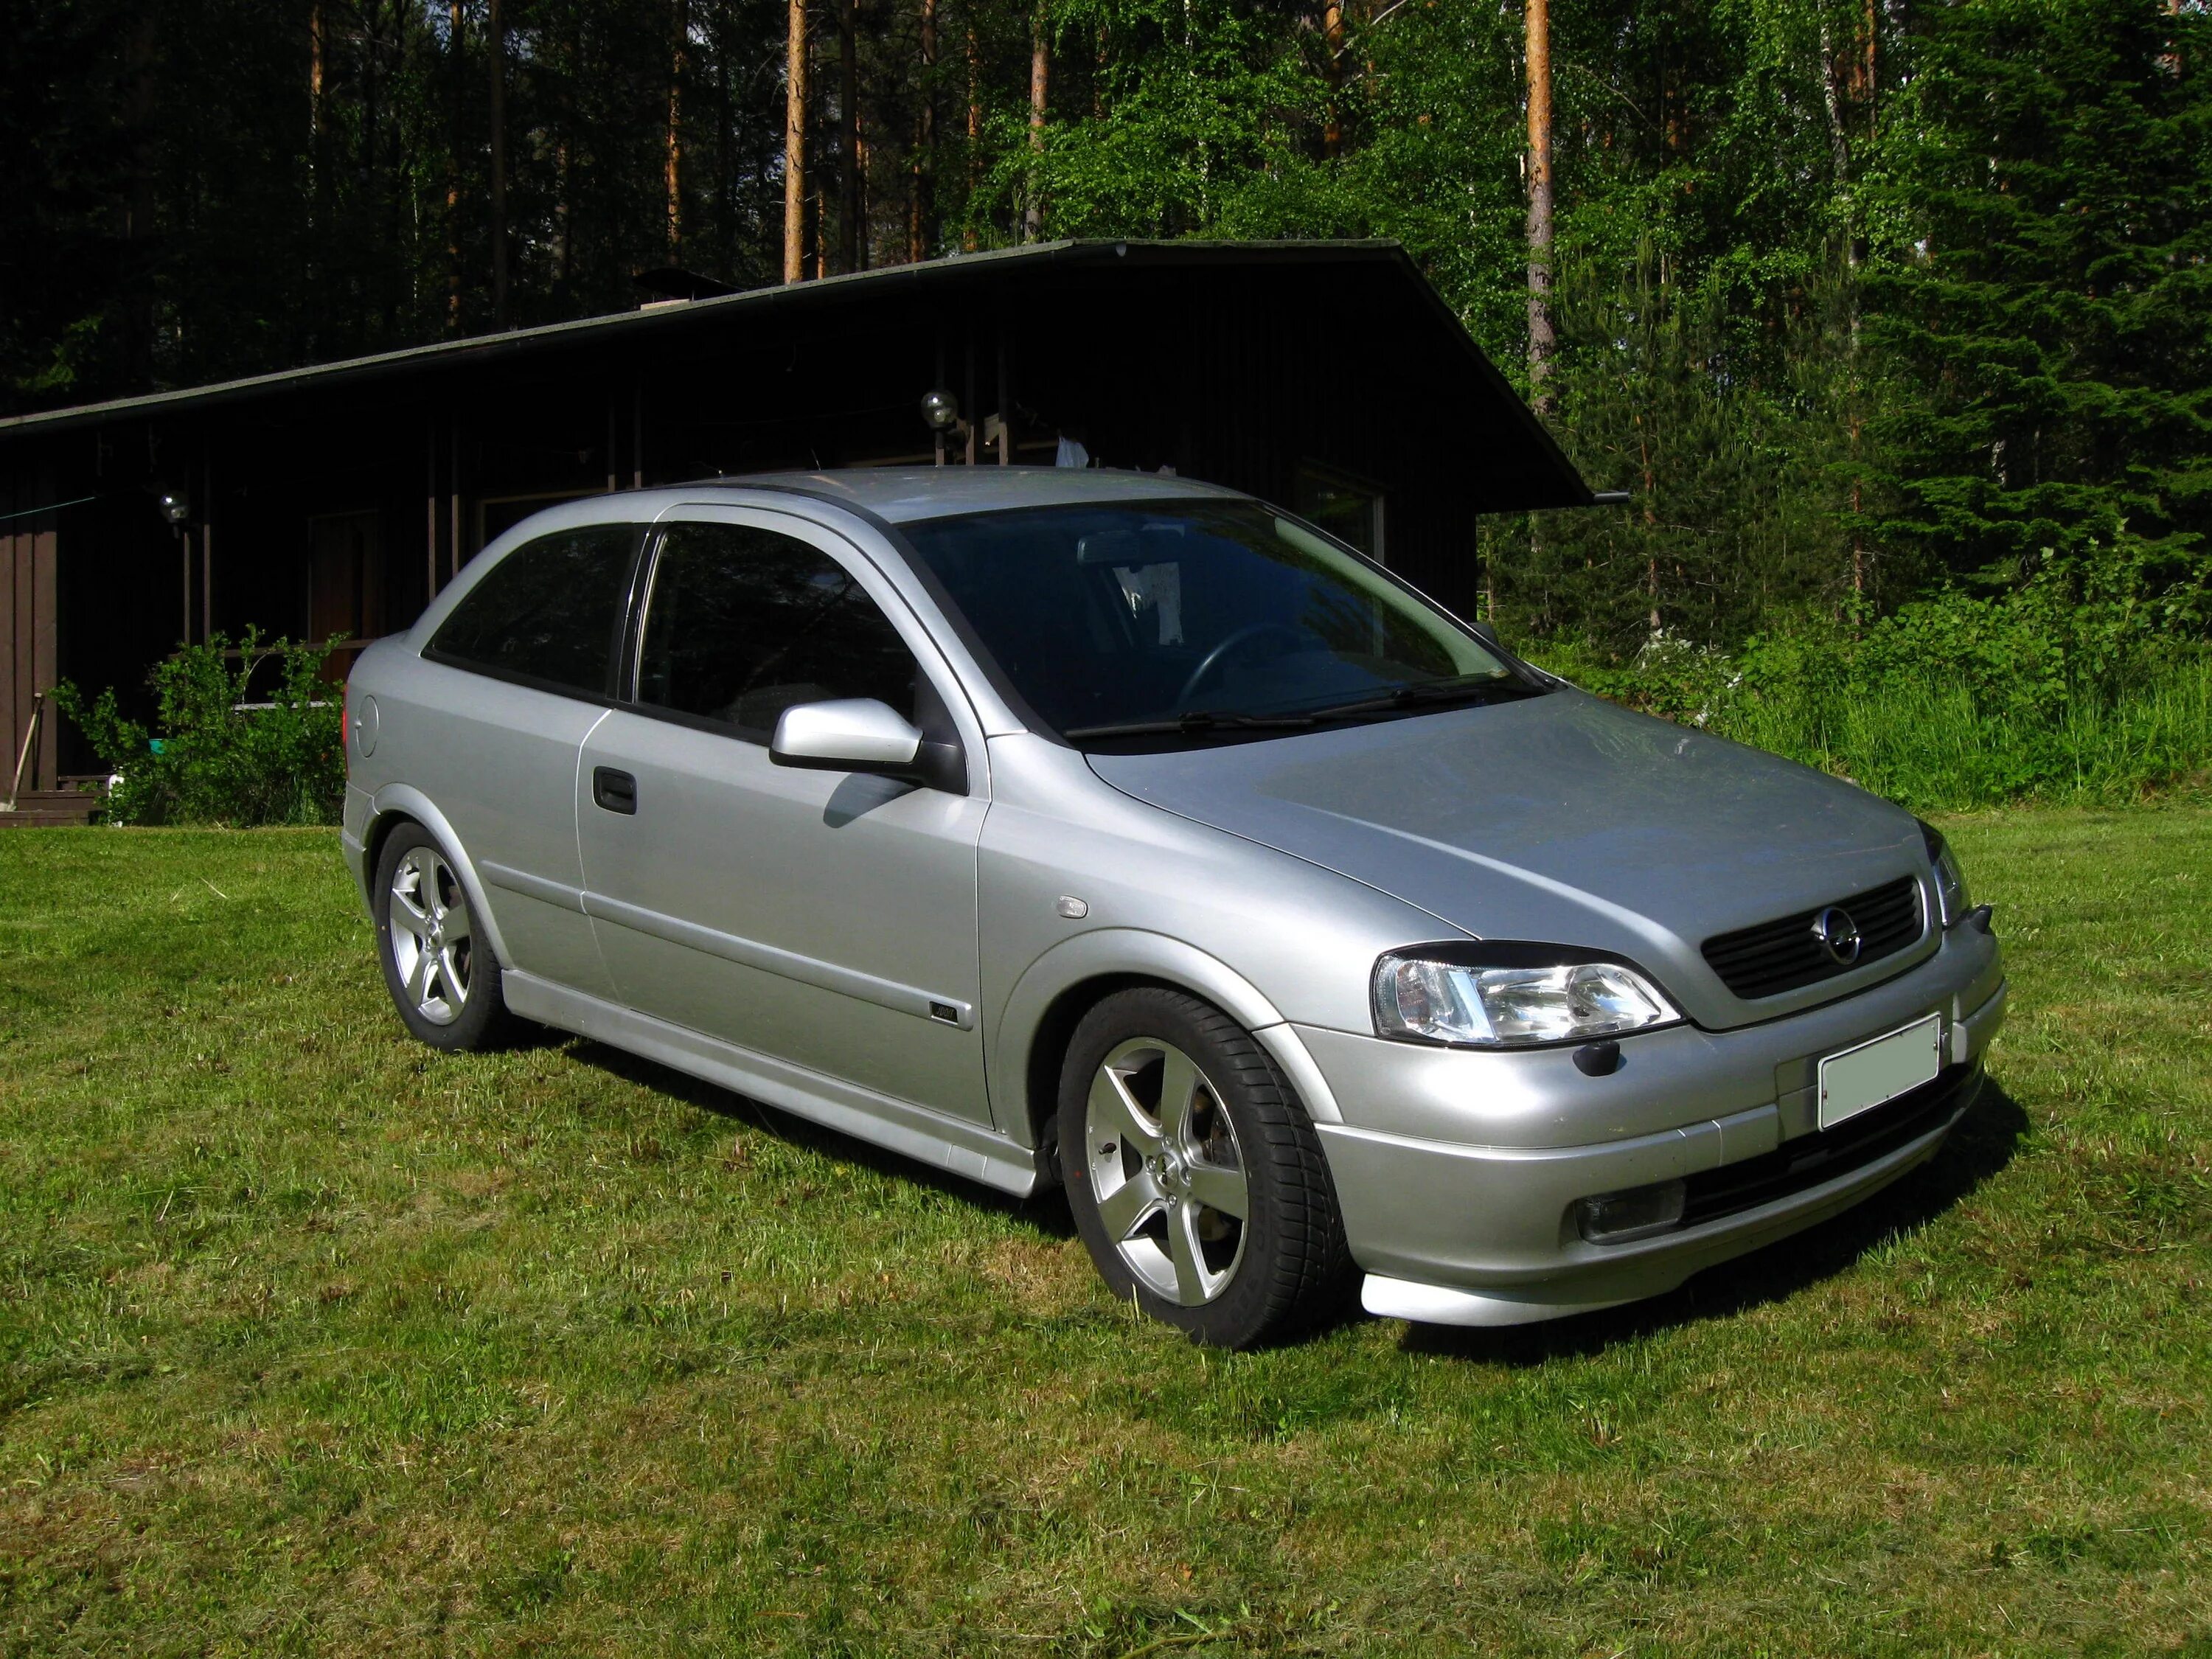 Opel Astra g 2004 1.6. Opel Astra g 1.6 2001.